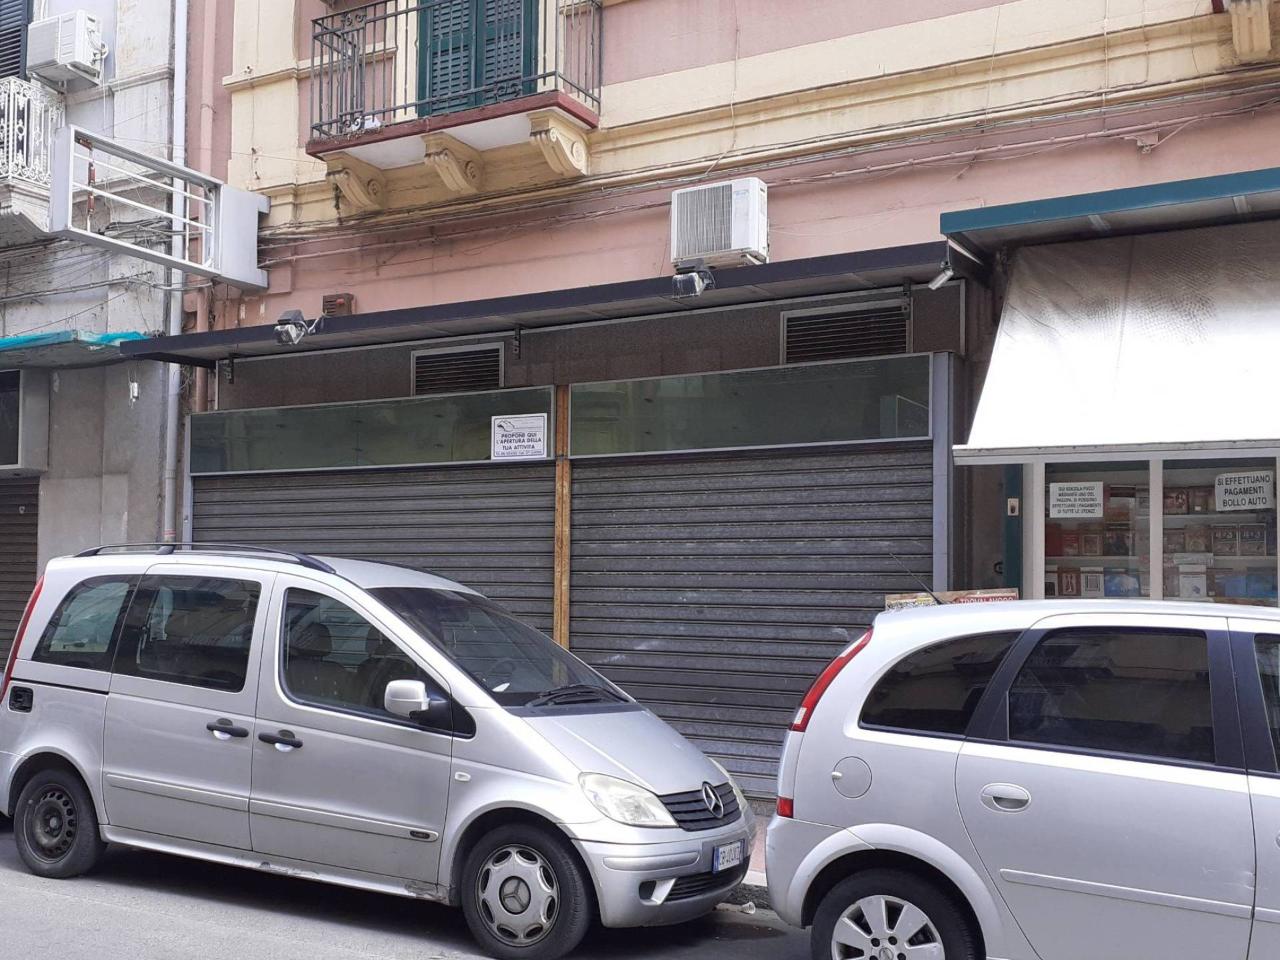 Negozio in affitto a Taranto